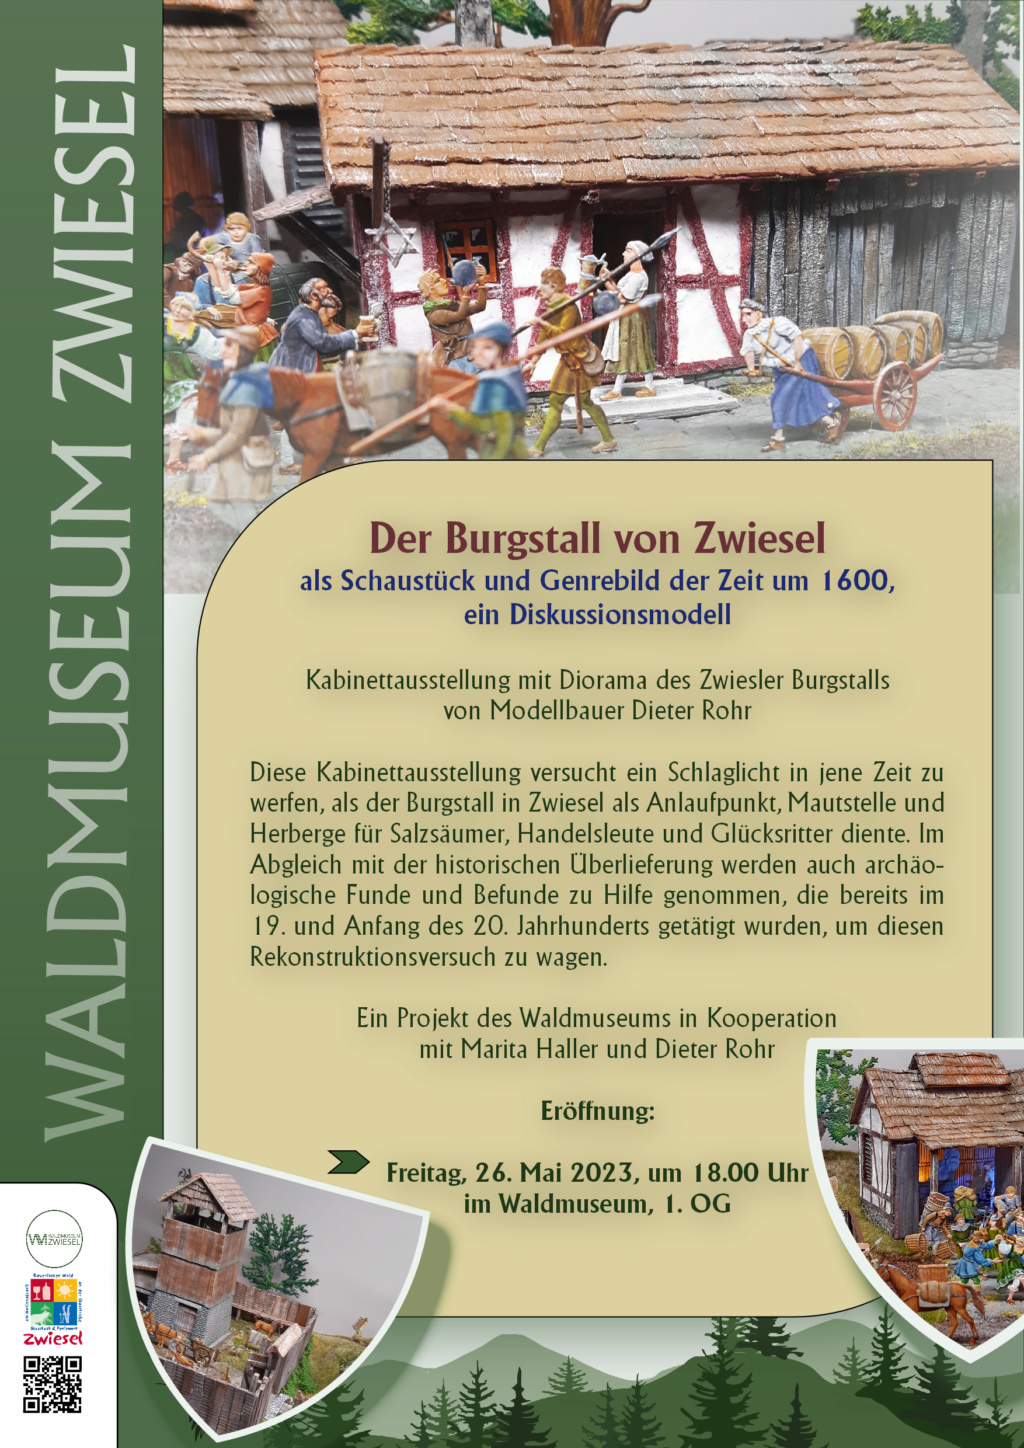 Der Burgstall Zwiesel um 1600, 30 mm Zinnfiguren - Seite 4 Progra11